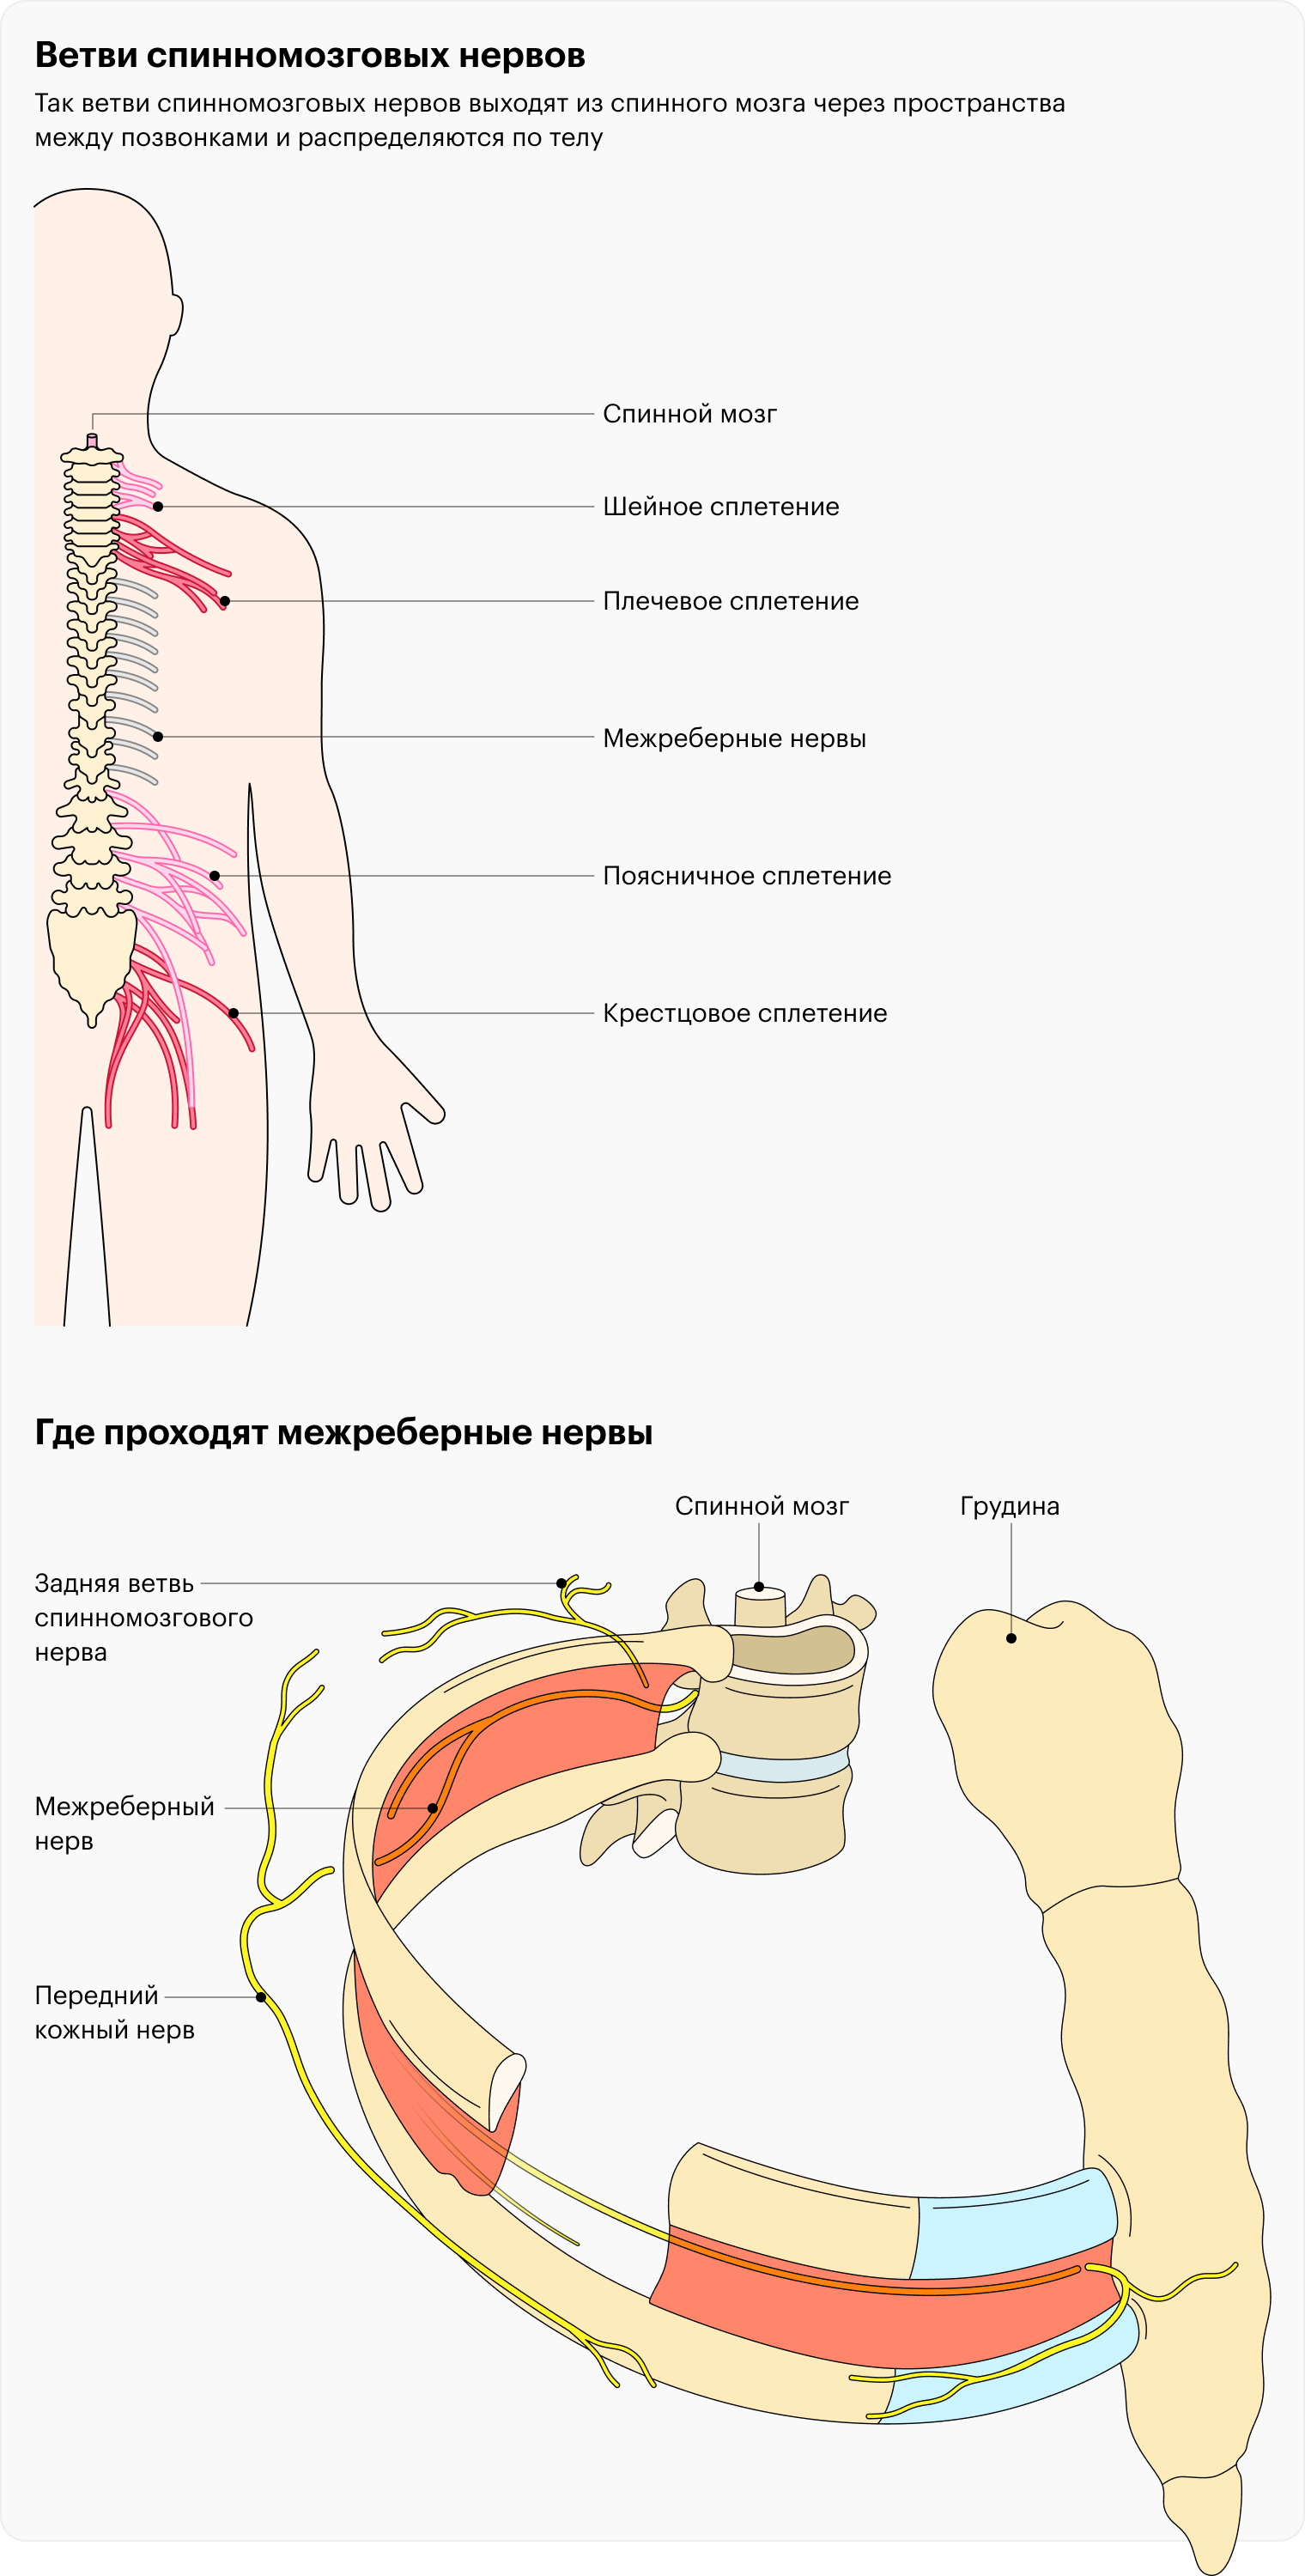 Анатомия межреберных нервов